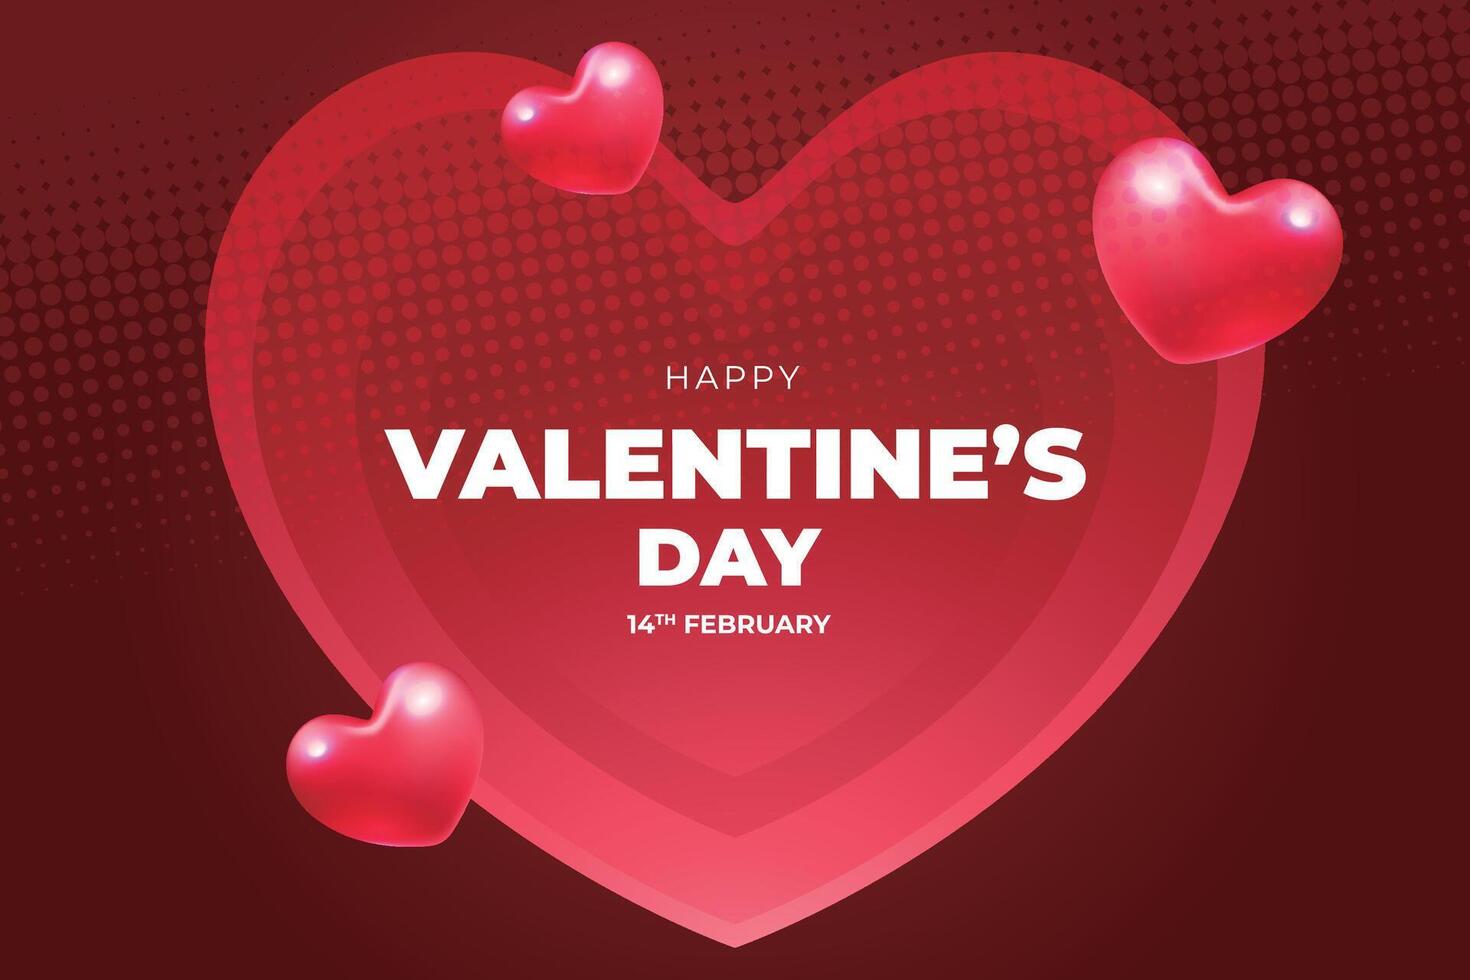 San Valentín día antecedentes con rojo corazón conformado globos vector